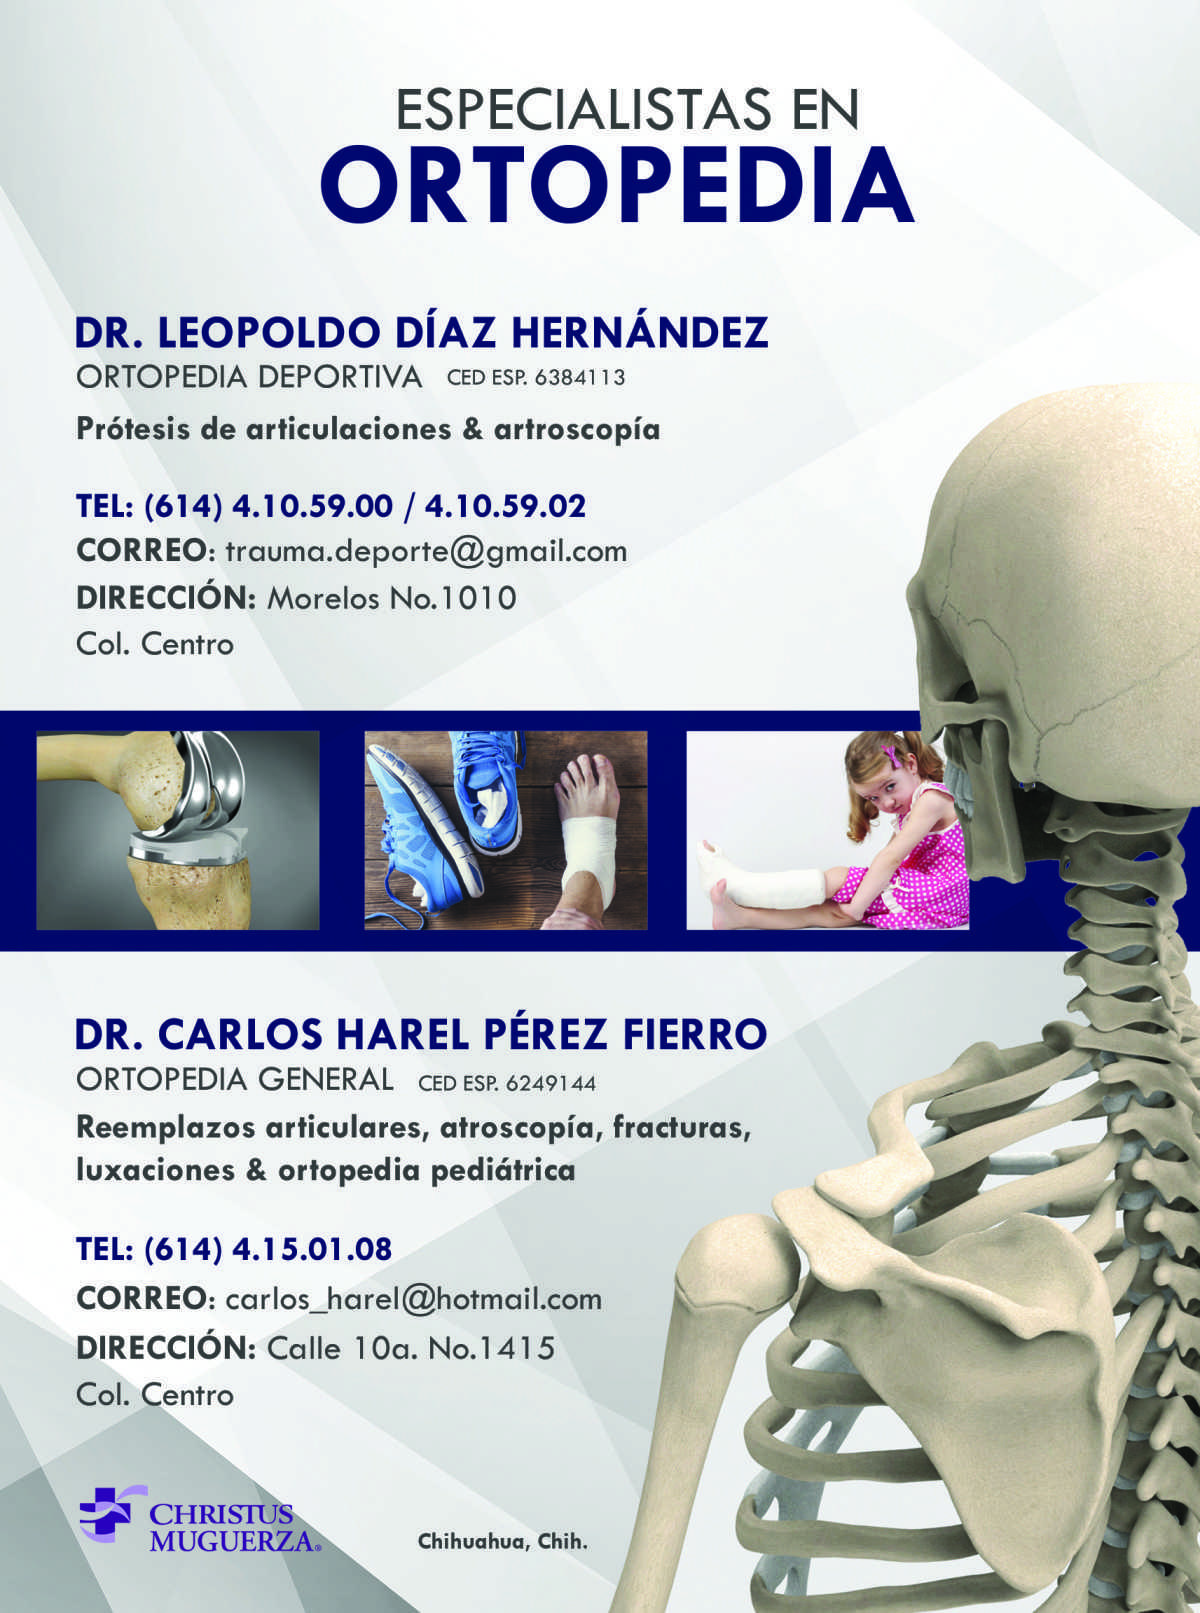 Dr. Carlos Harel Pérez Fierro